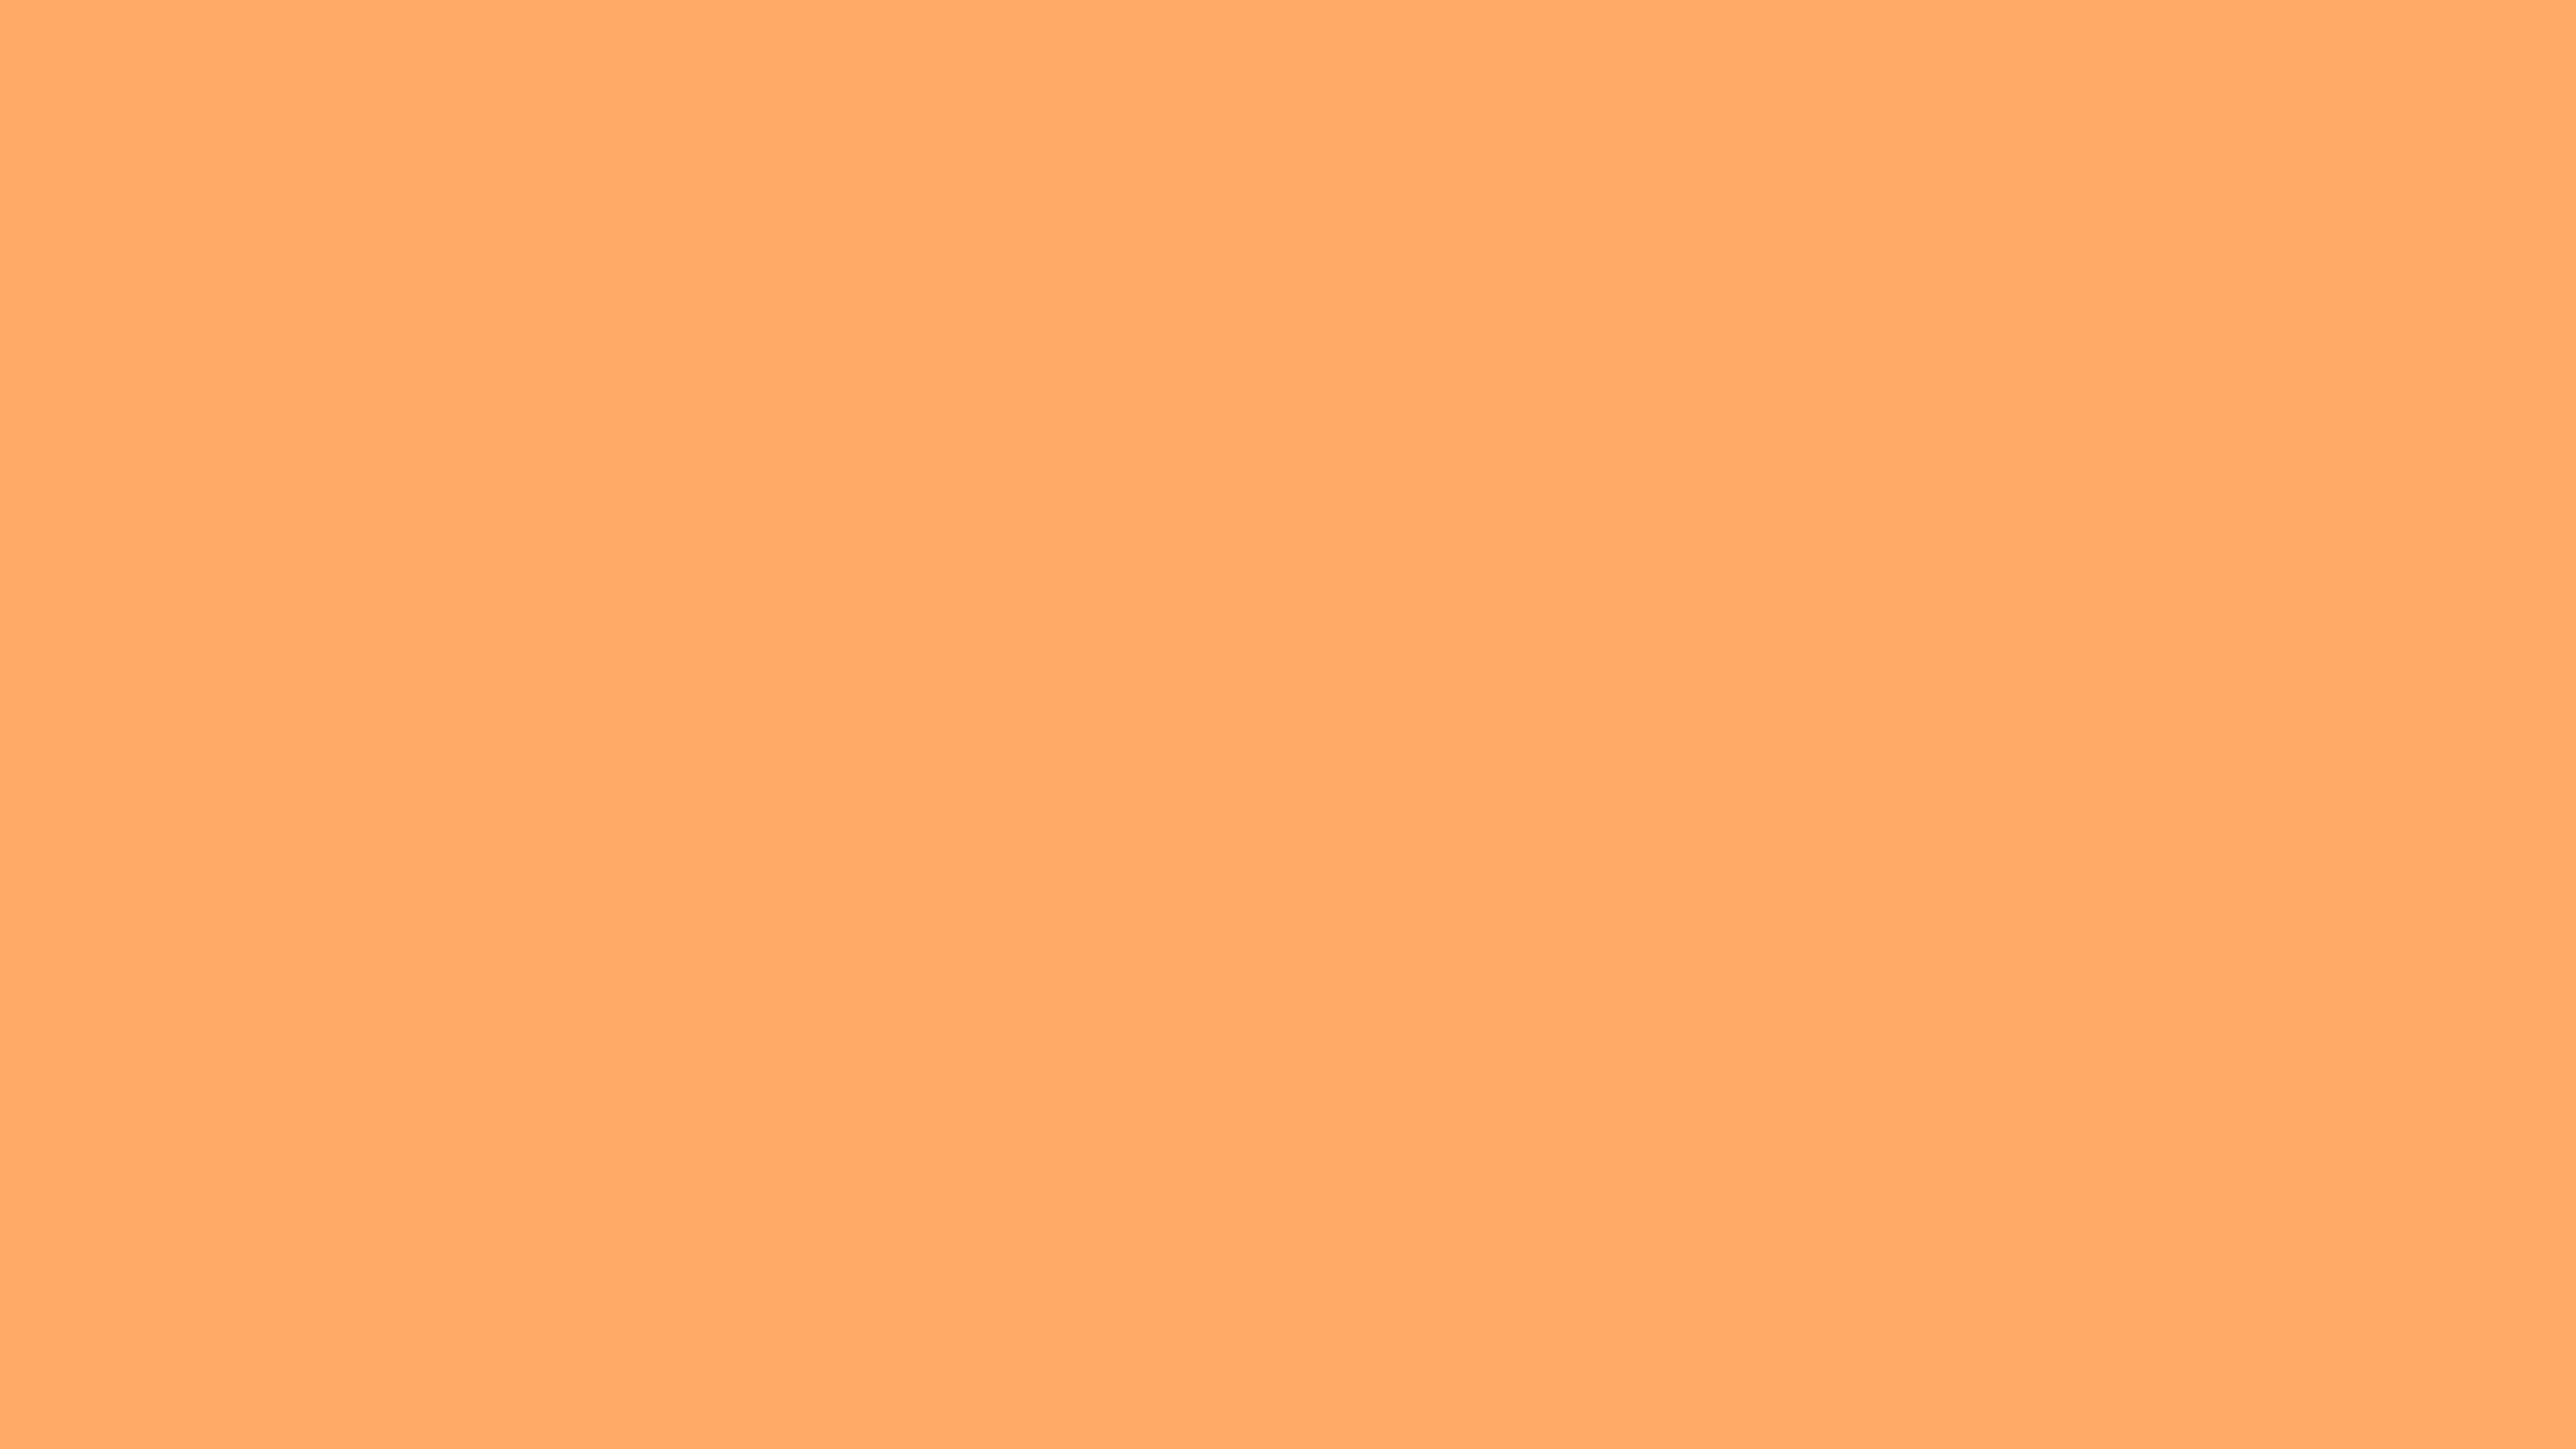 Transparent Orange Solid Color Background Image. Free Image Generator